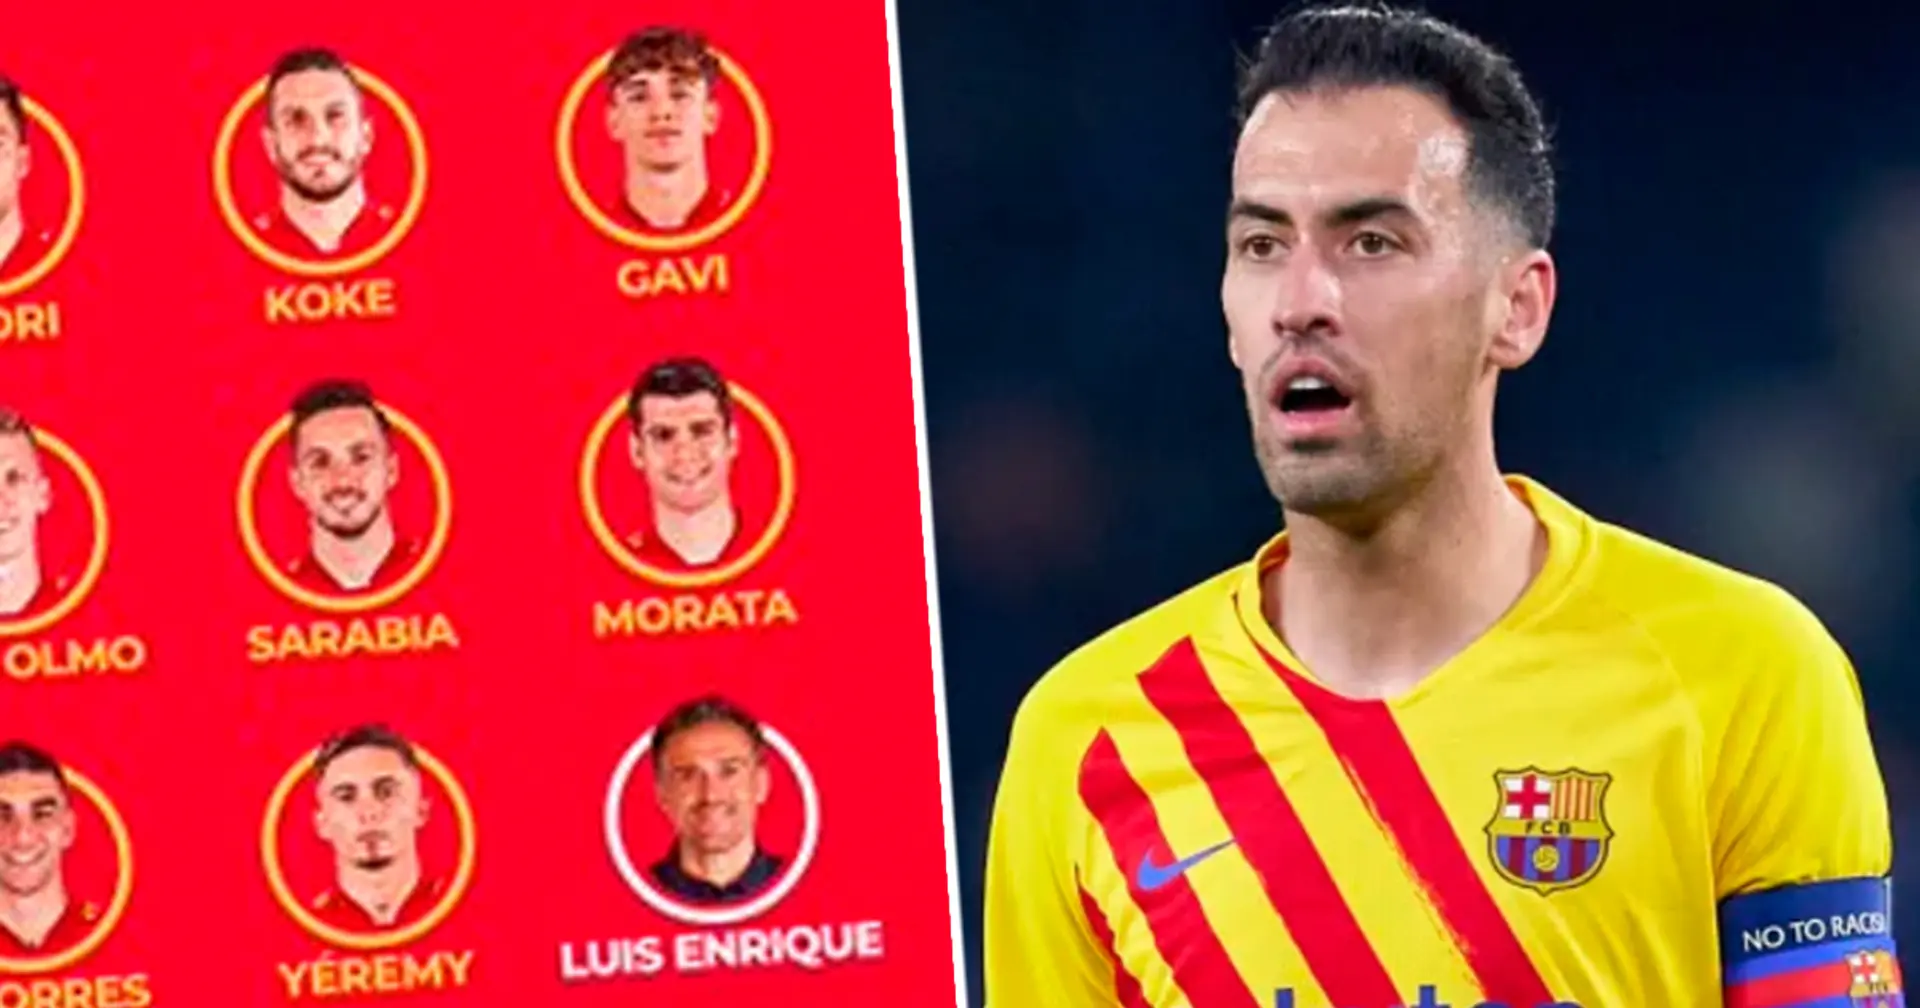 No Busquets: Luis Enrique names 23-man Spain squad for March games